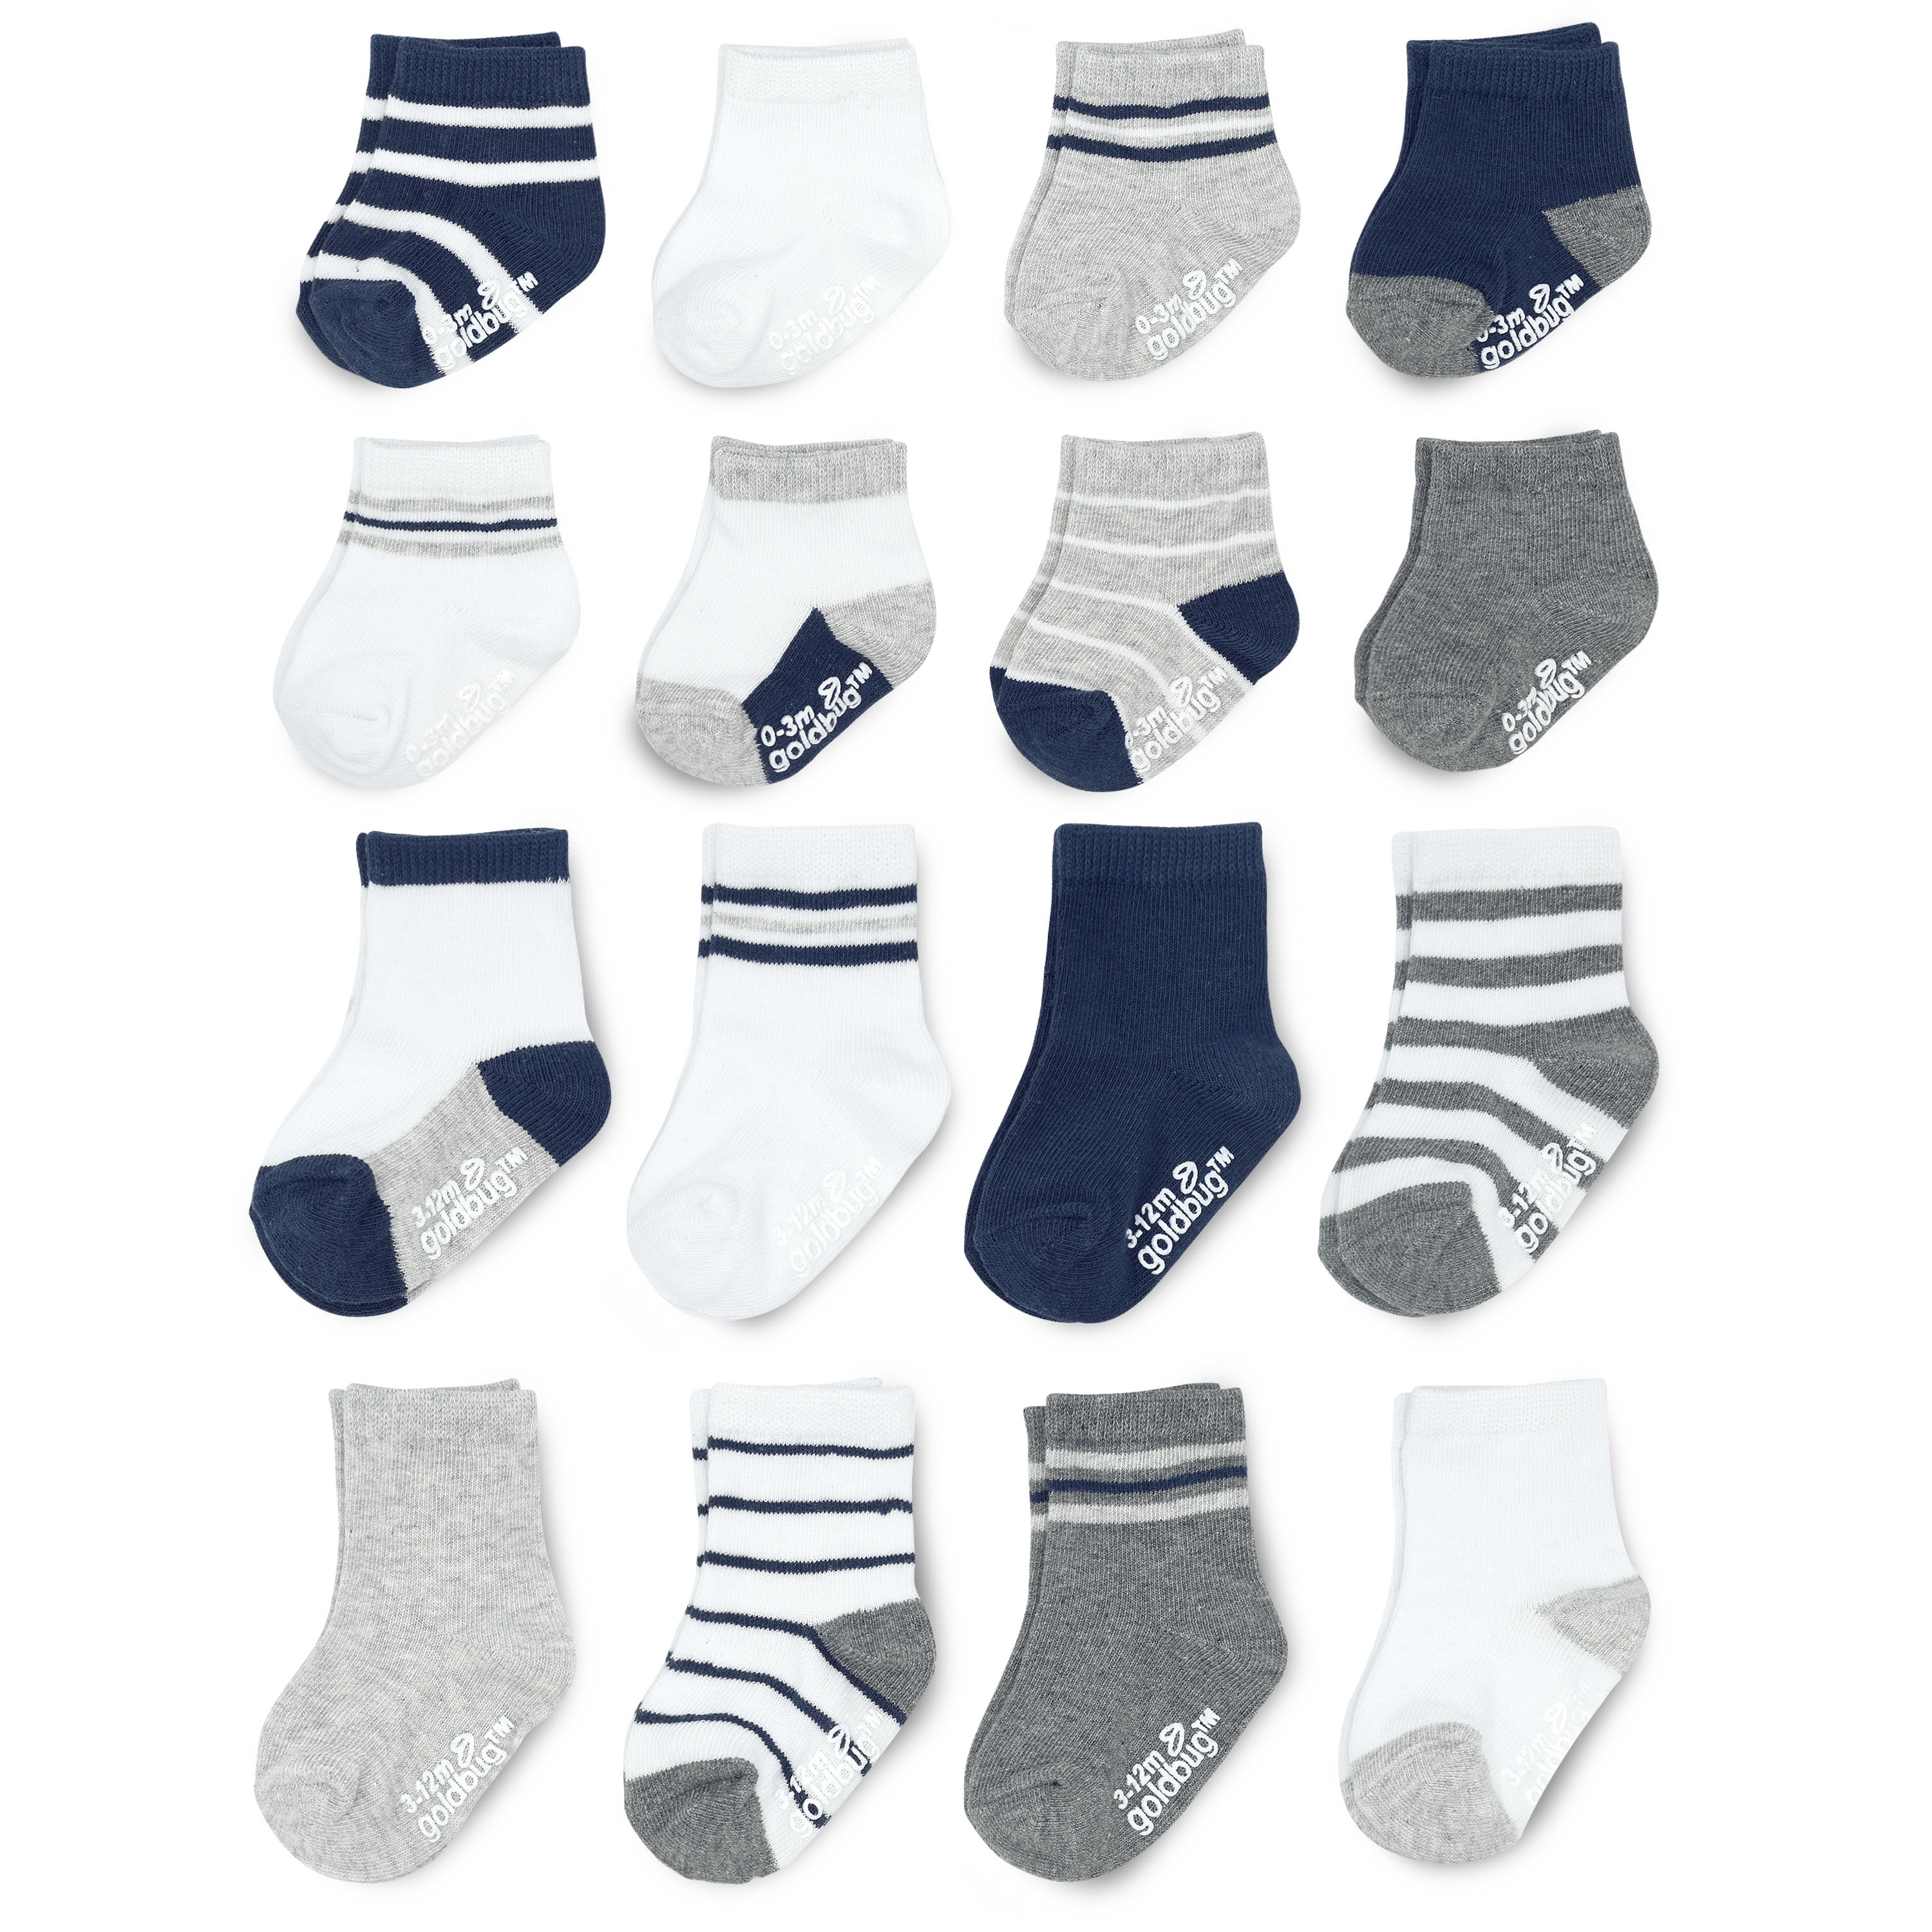 Falari 12 or 24 Pairs Boy Toddler Kids Cotton Socks